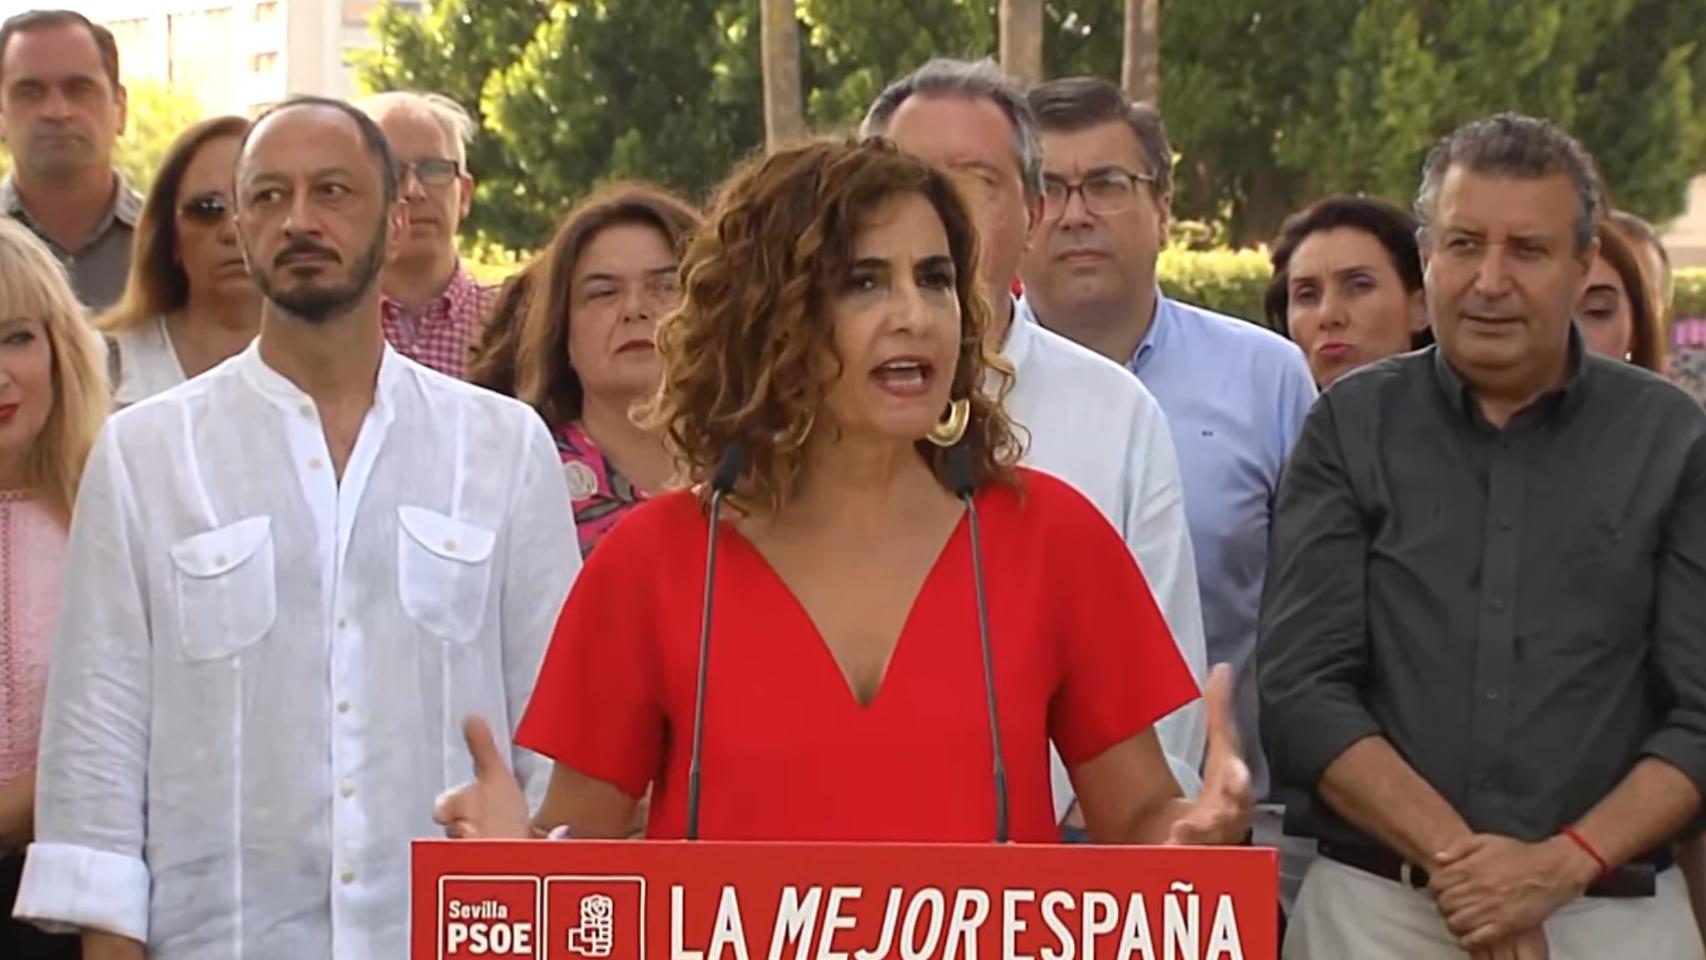 La vicesecretaria general del PSOE y ministra de Hacienda, María Jesús Montero